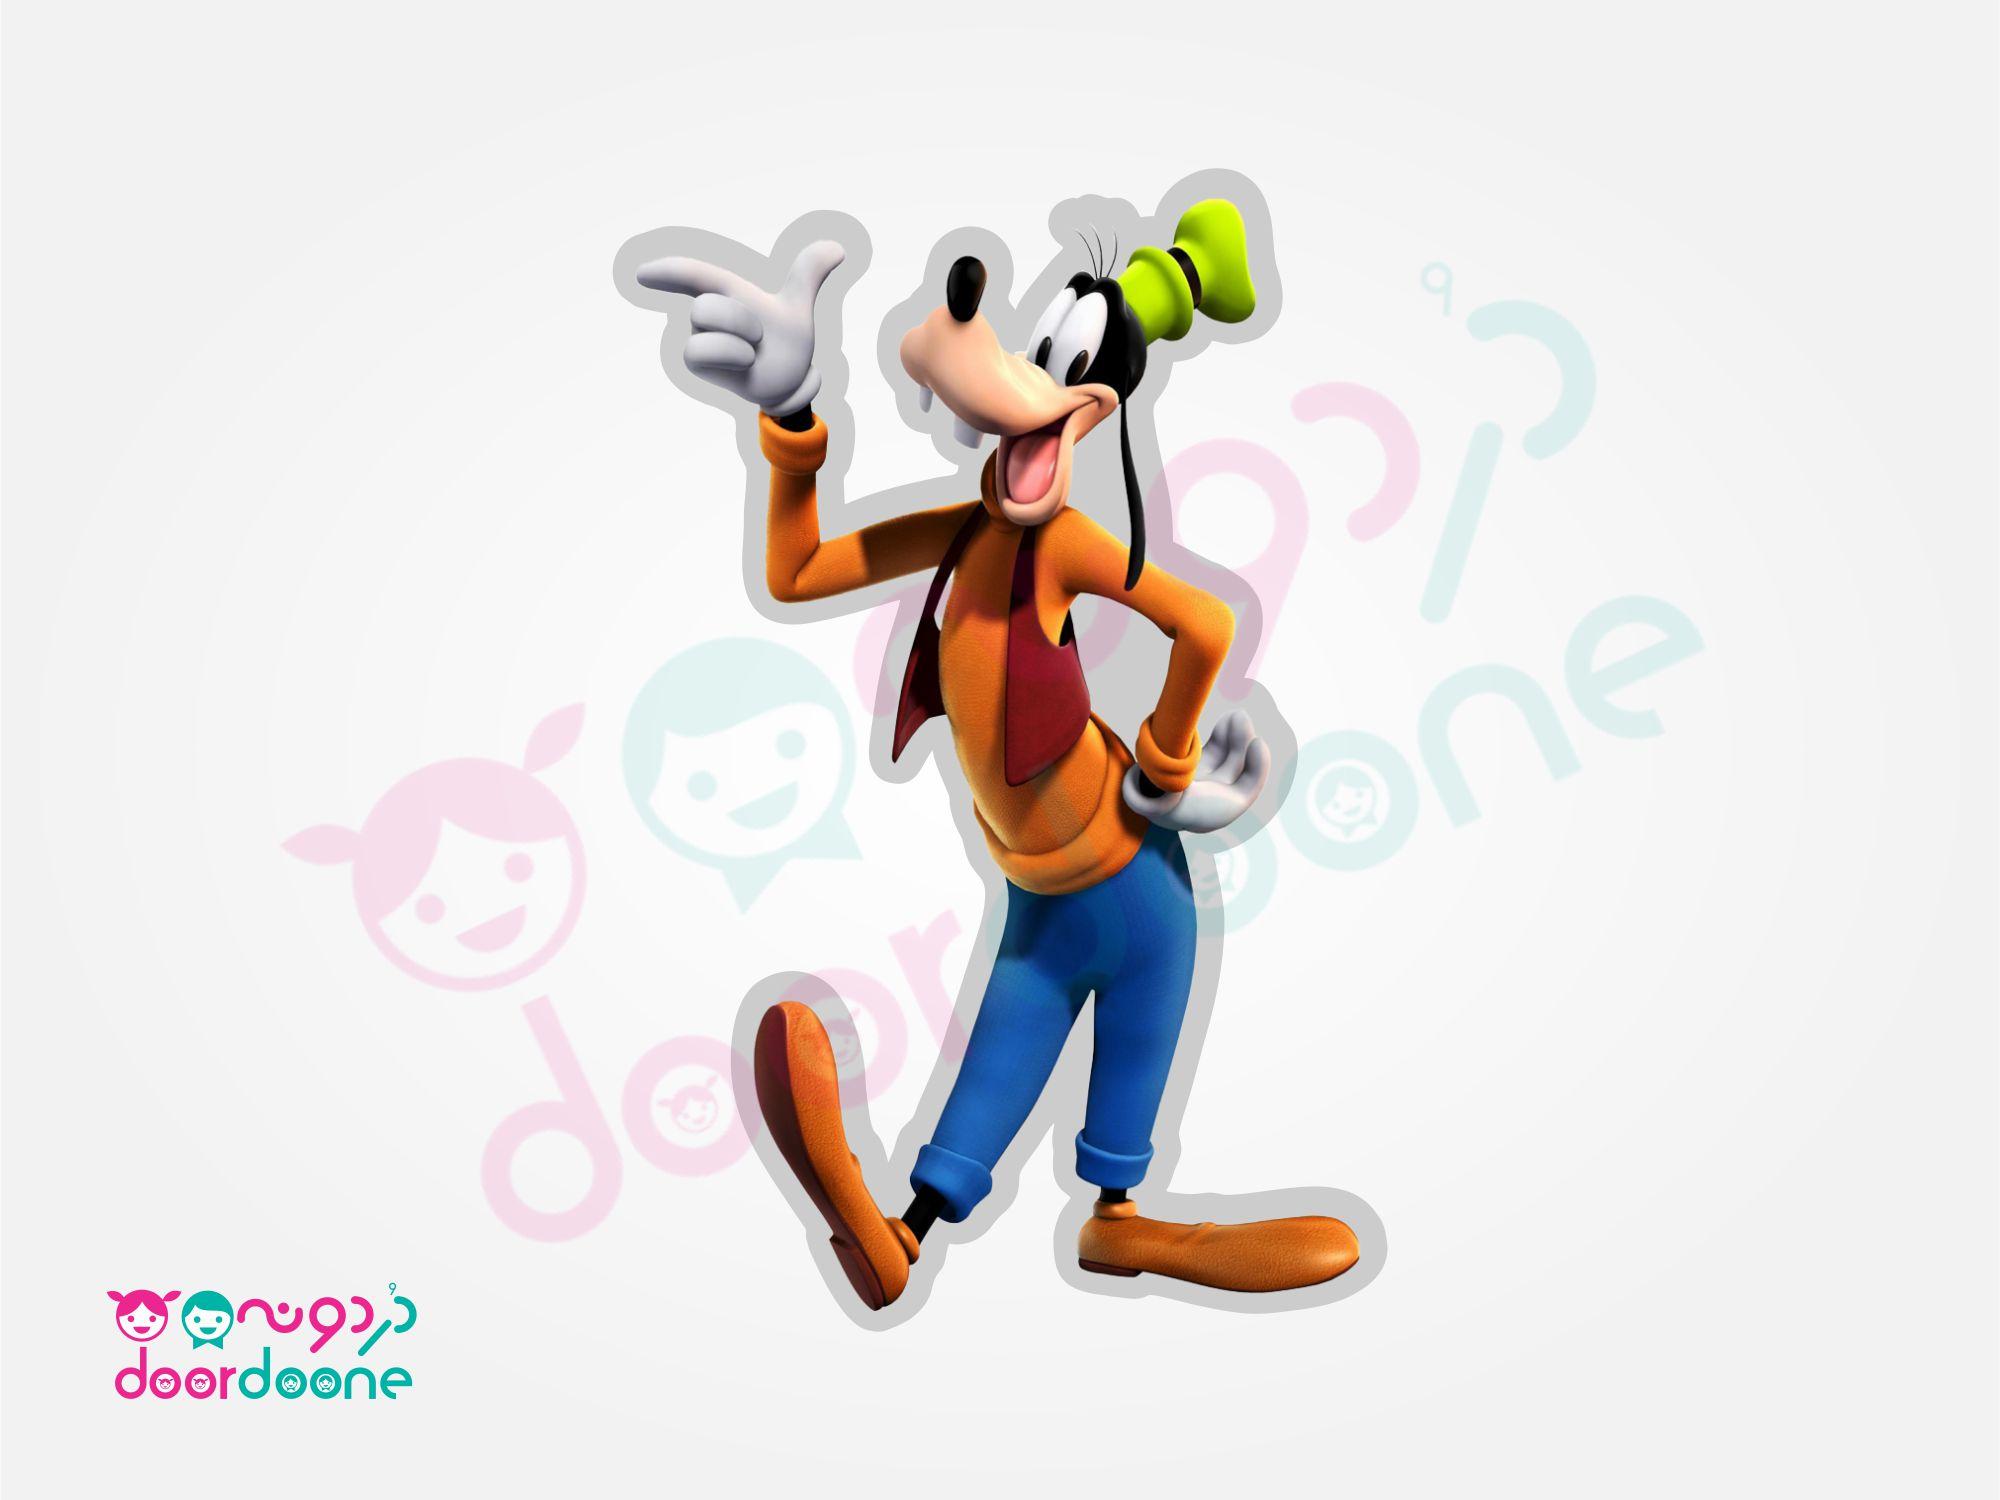 استند ميکی ماوس (Mikey Mouse) - ارتفاع 35 سانتيمتر